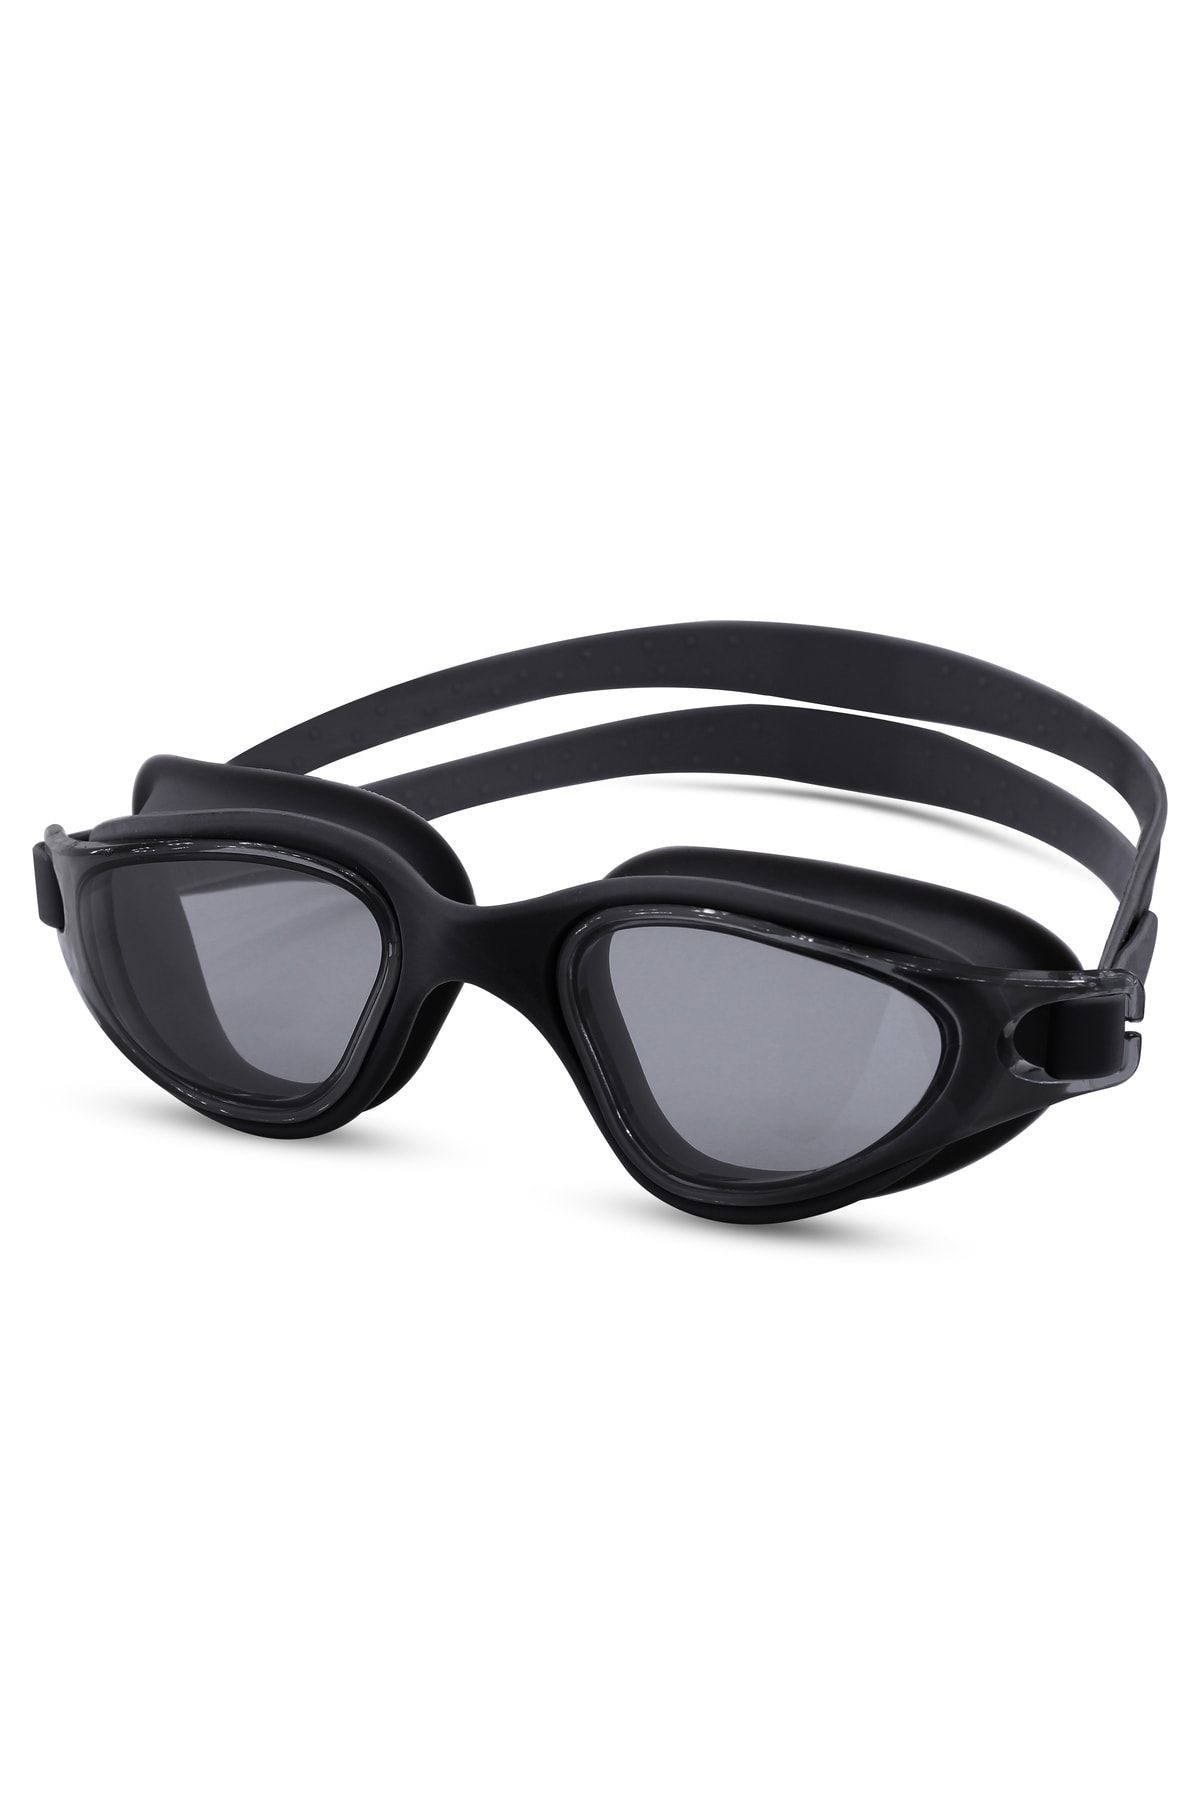 Telvesse Yüzücü Gözlüğü Swimmer Buğu Yapmaz Vakumlu Uv Korumalı Yüzme Havuz Deniz Gözlüğü Siyah